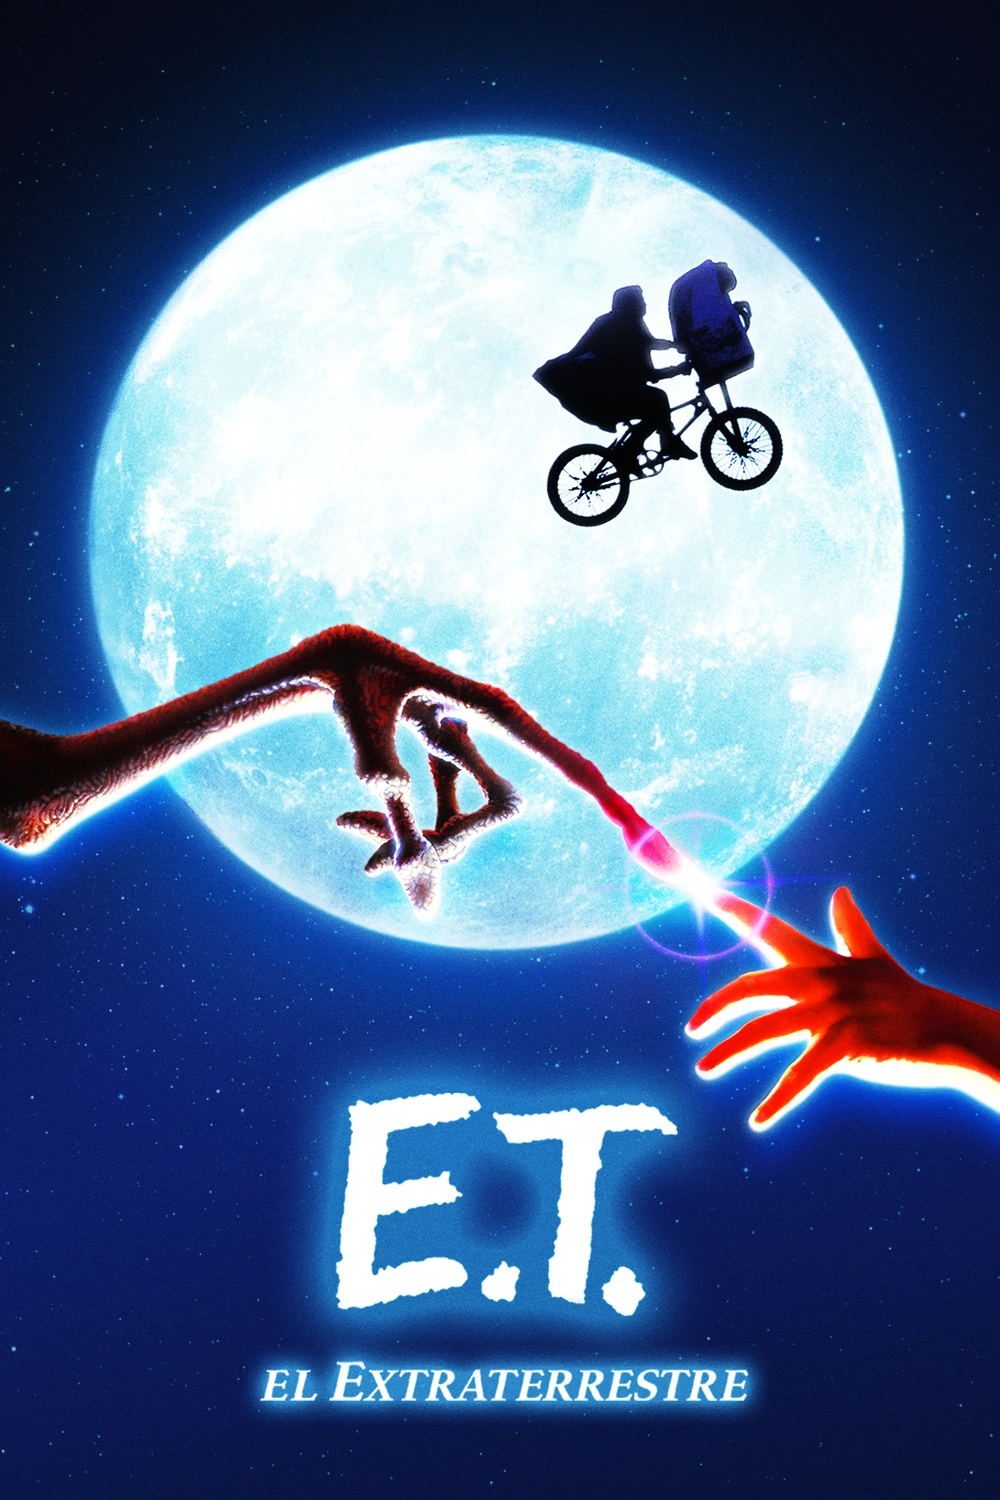 E.T. el extraterrestre - Filmin